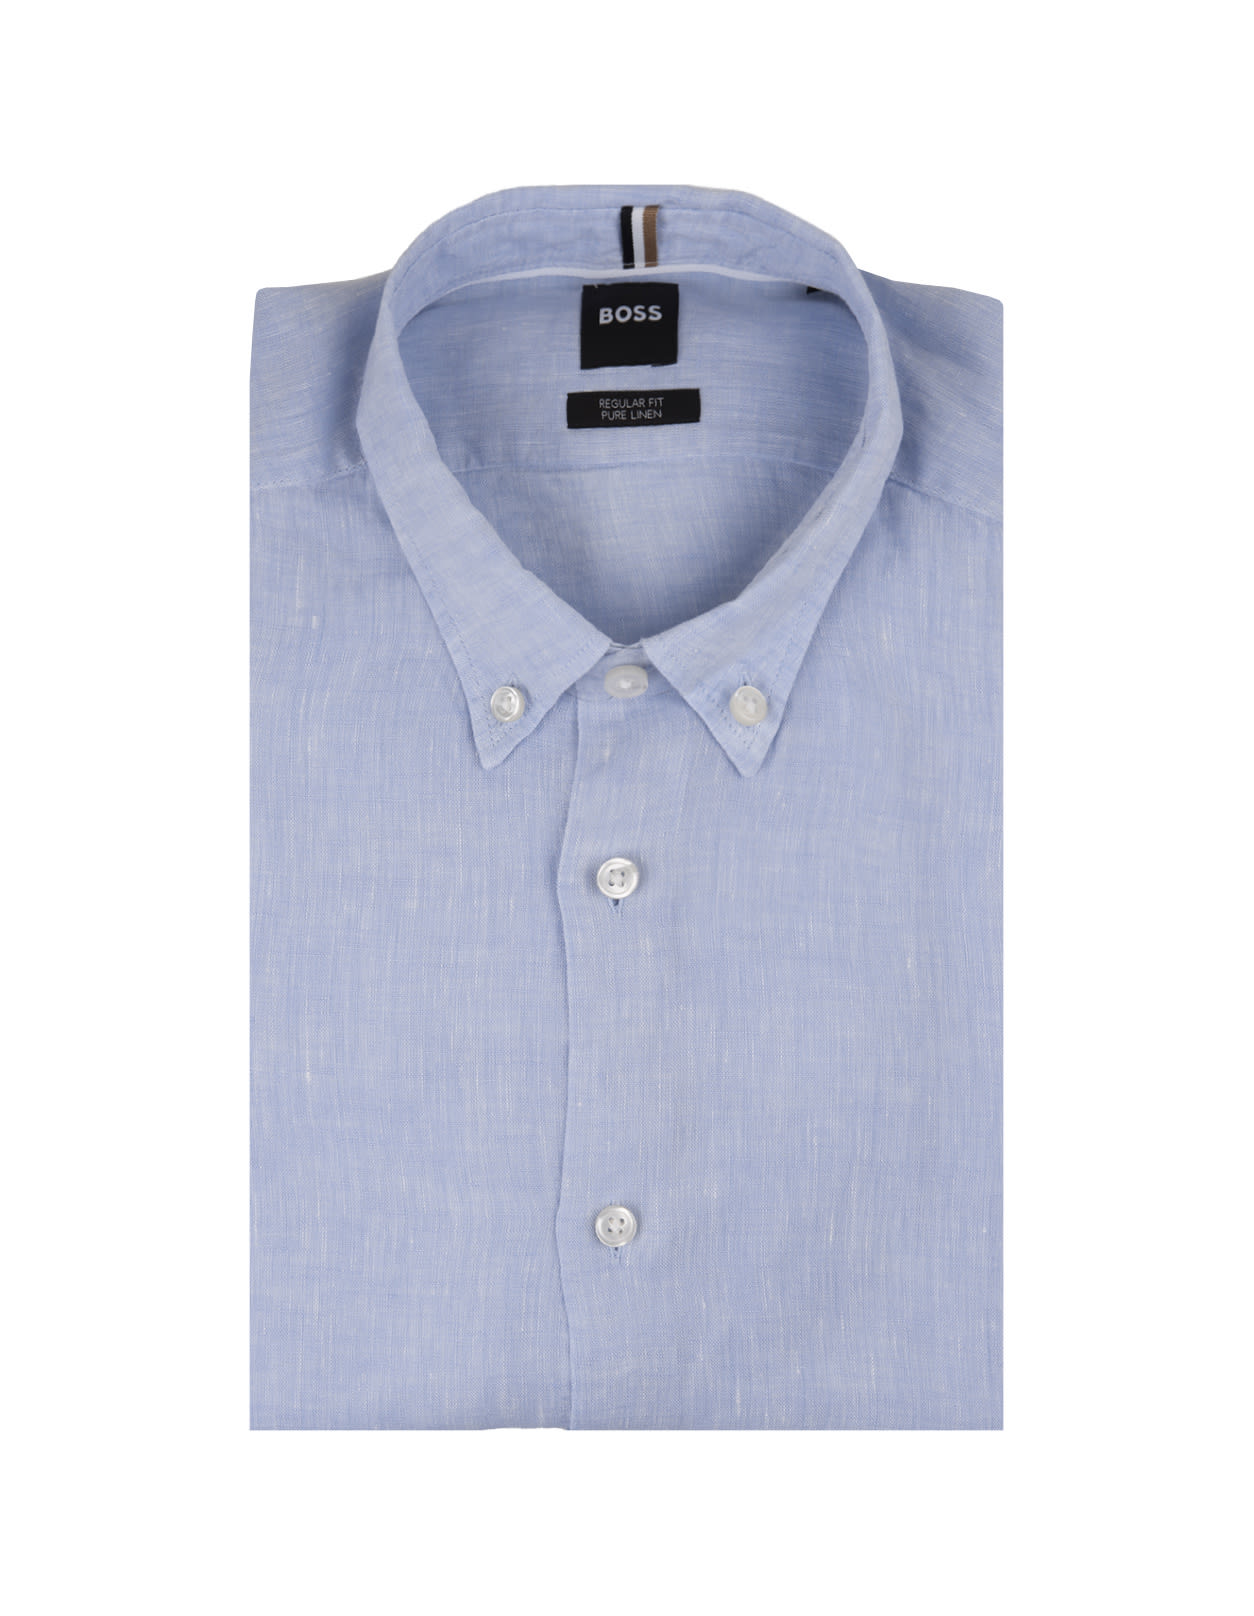 Hugo Boss Regular Fit Shirt In Light Blue Linen With Button-down Collar